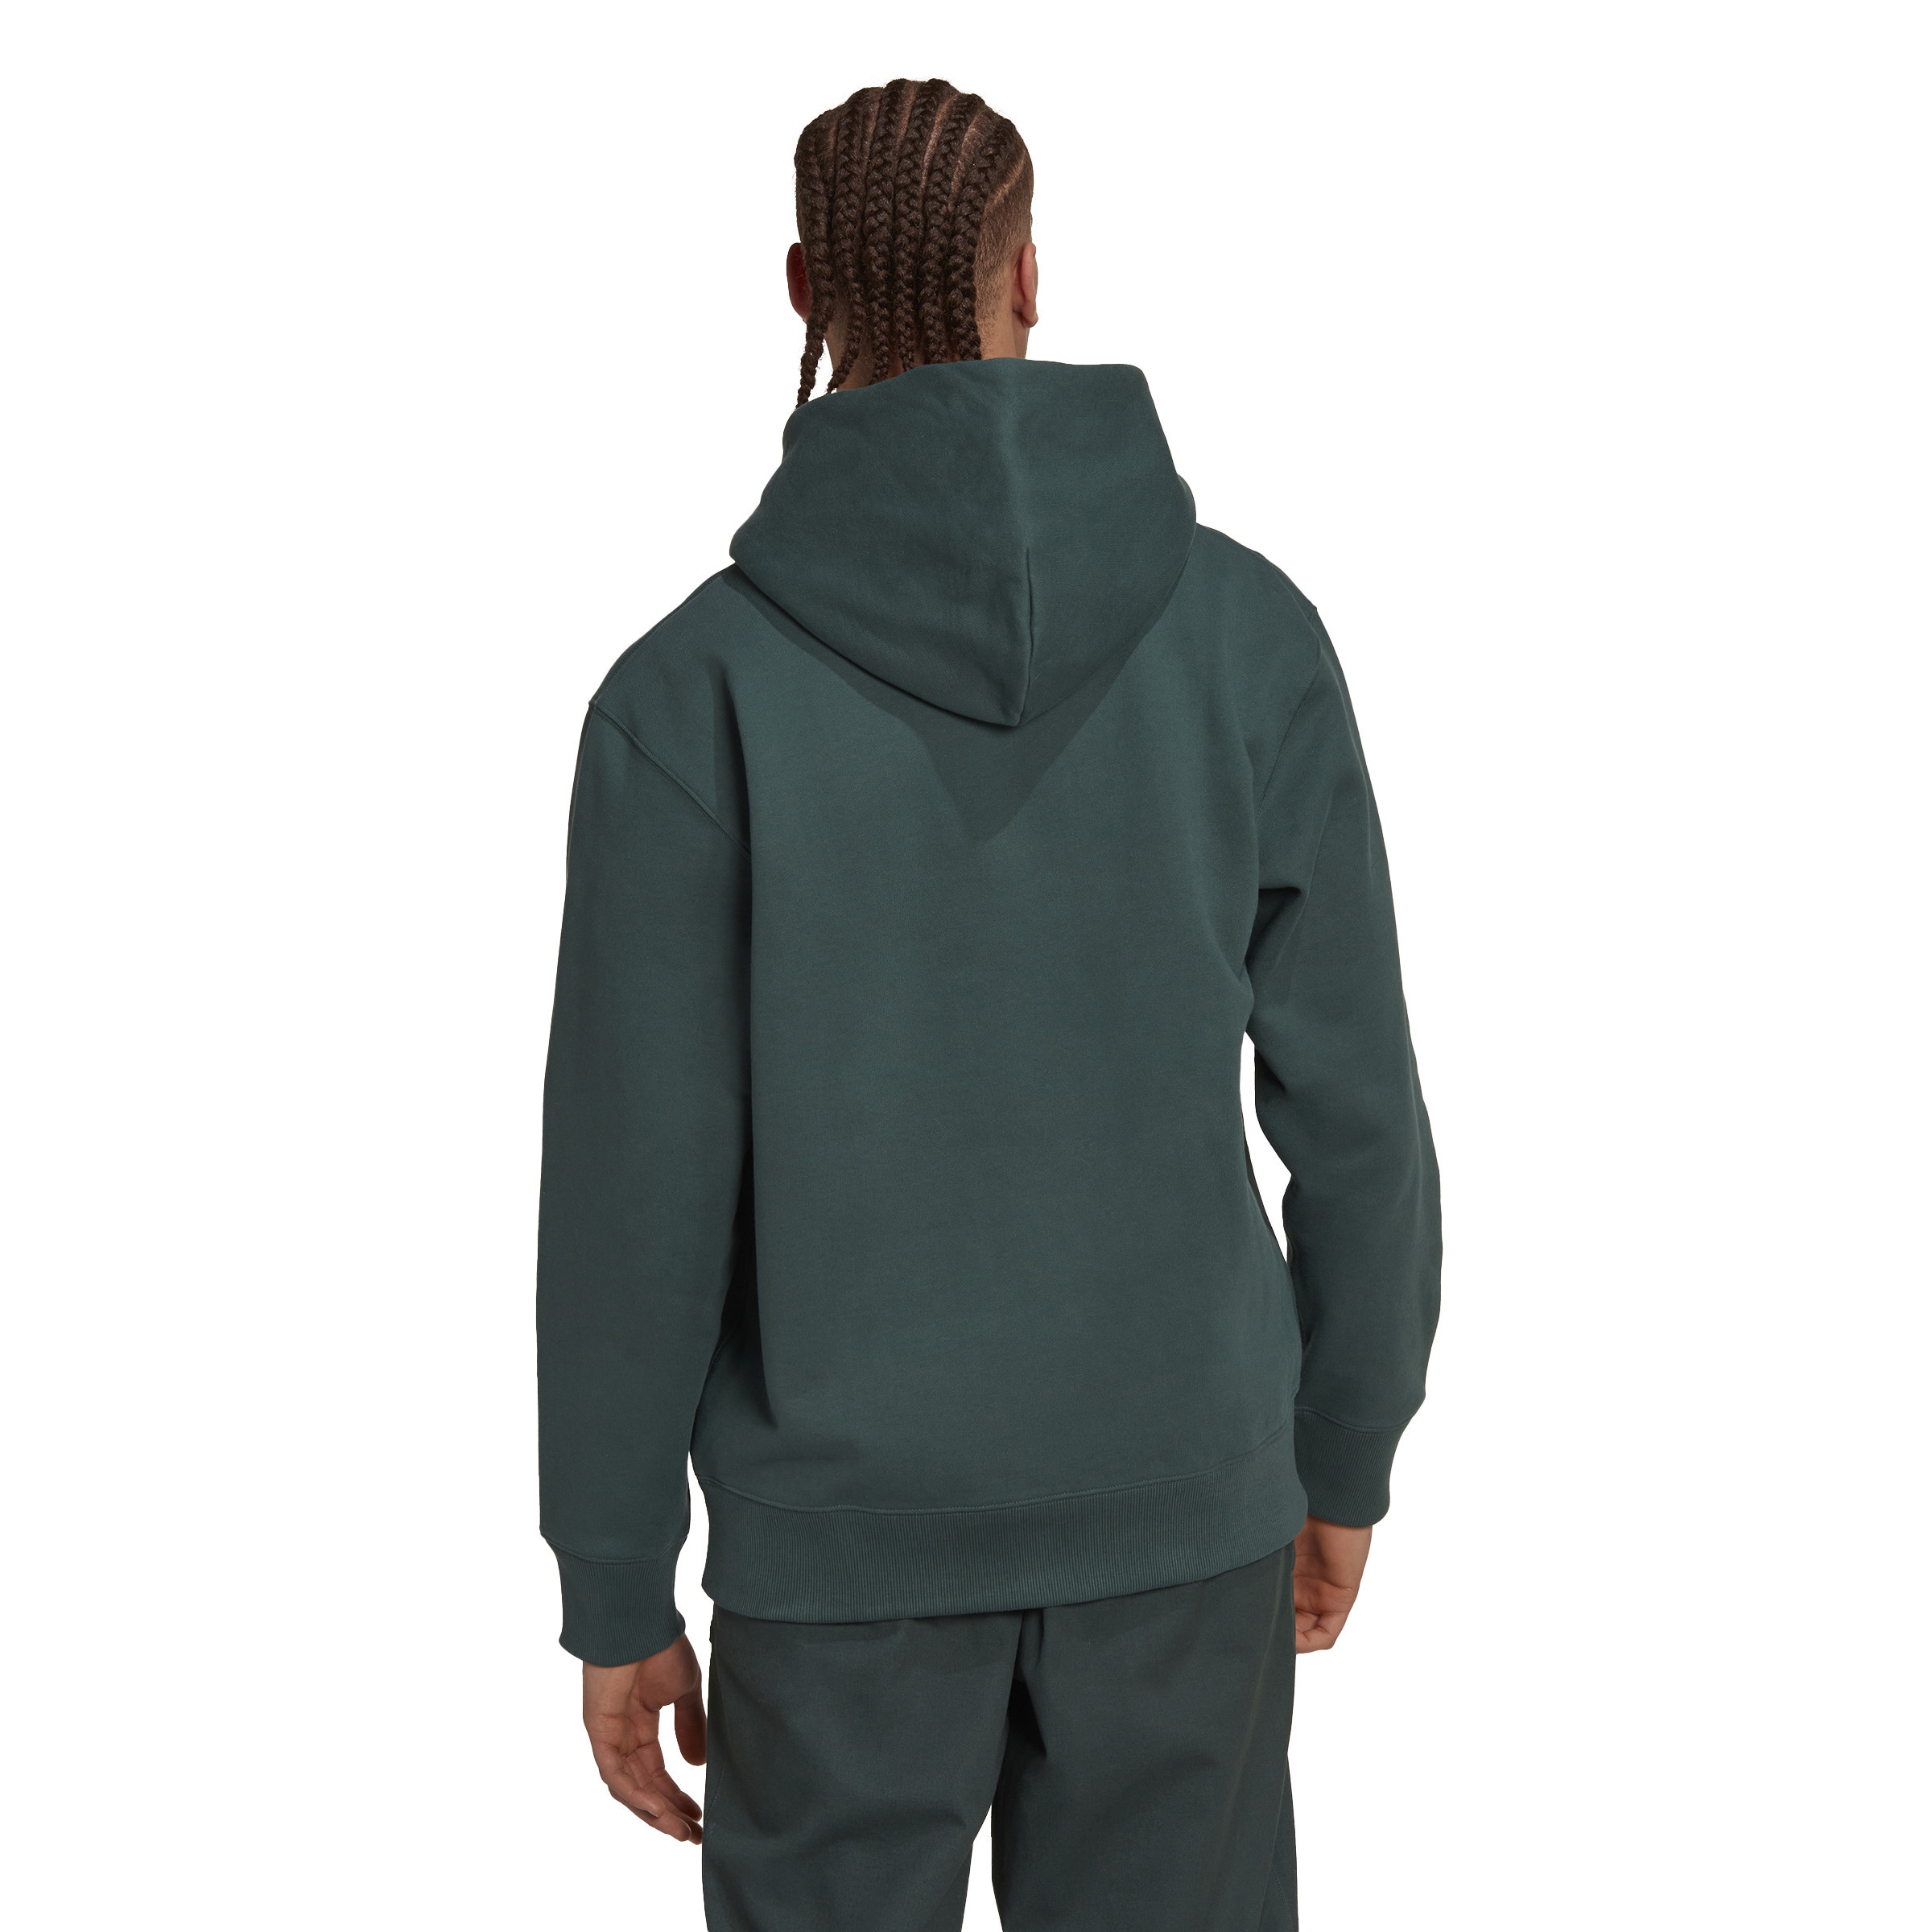 Adidas - Hooded sweatshirt adicolor, Dark Green, large image number 6